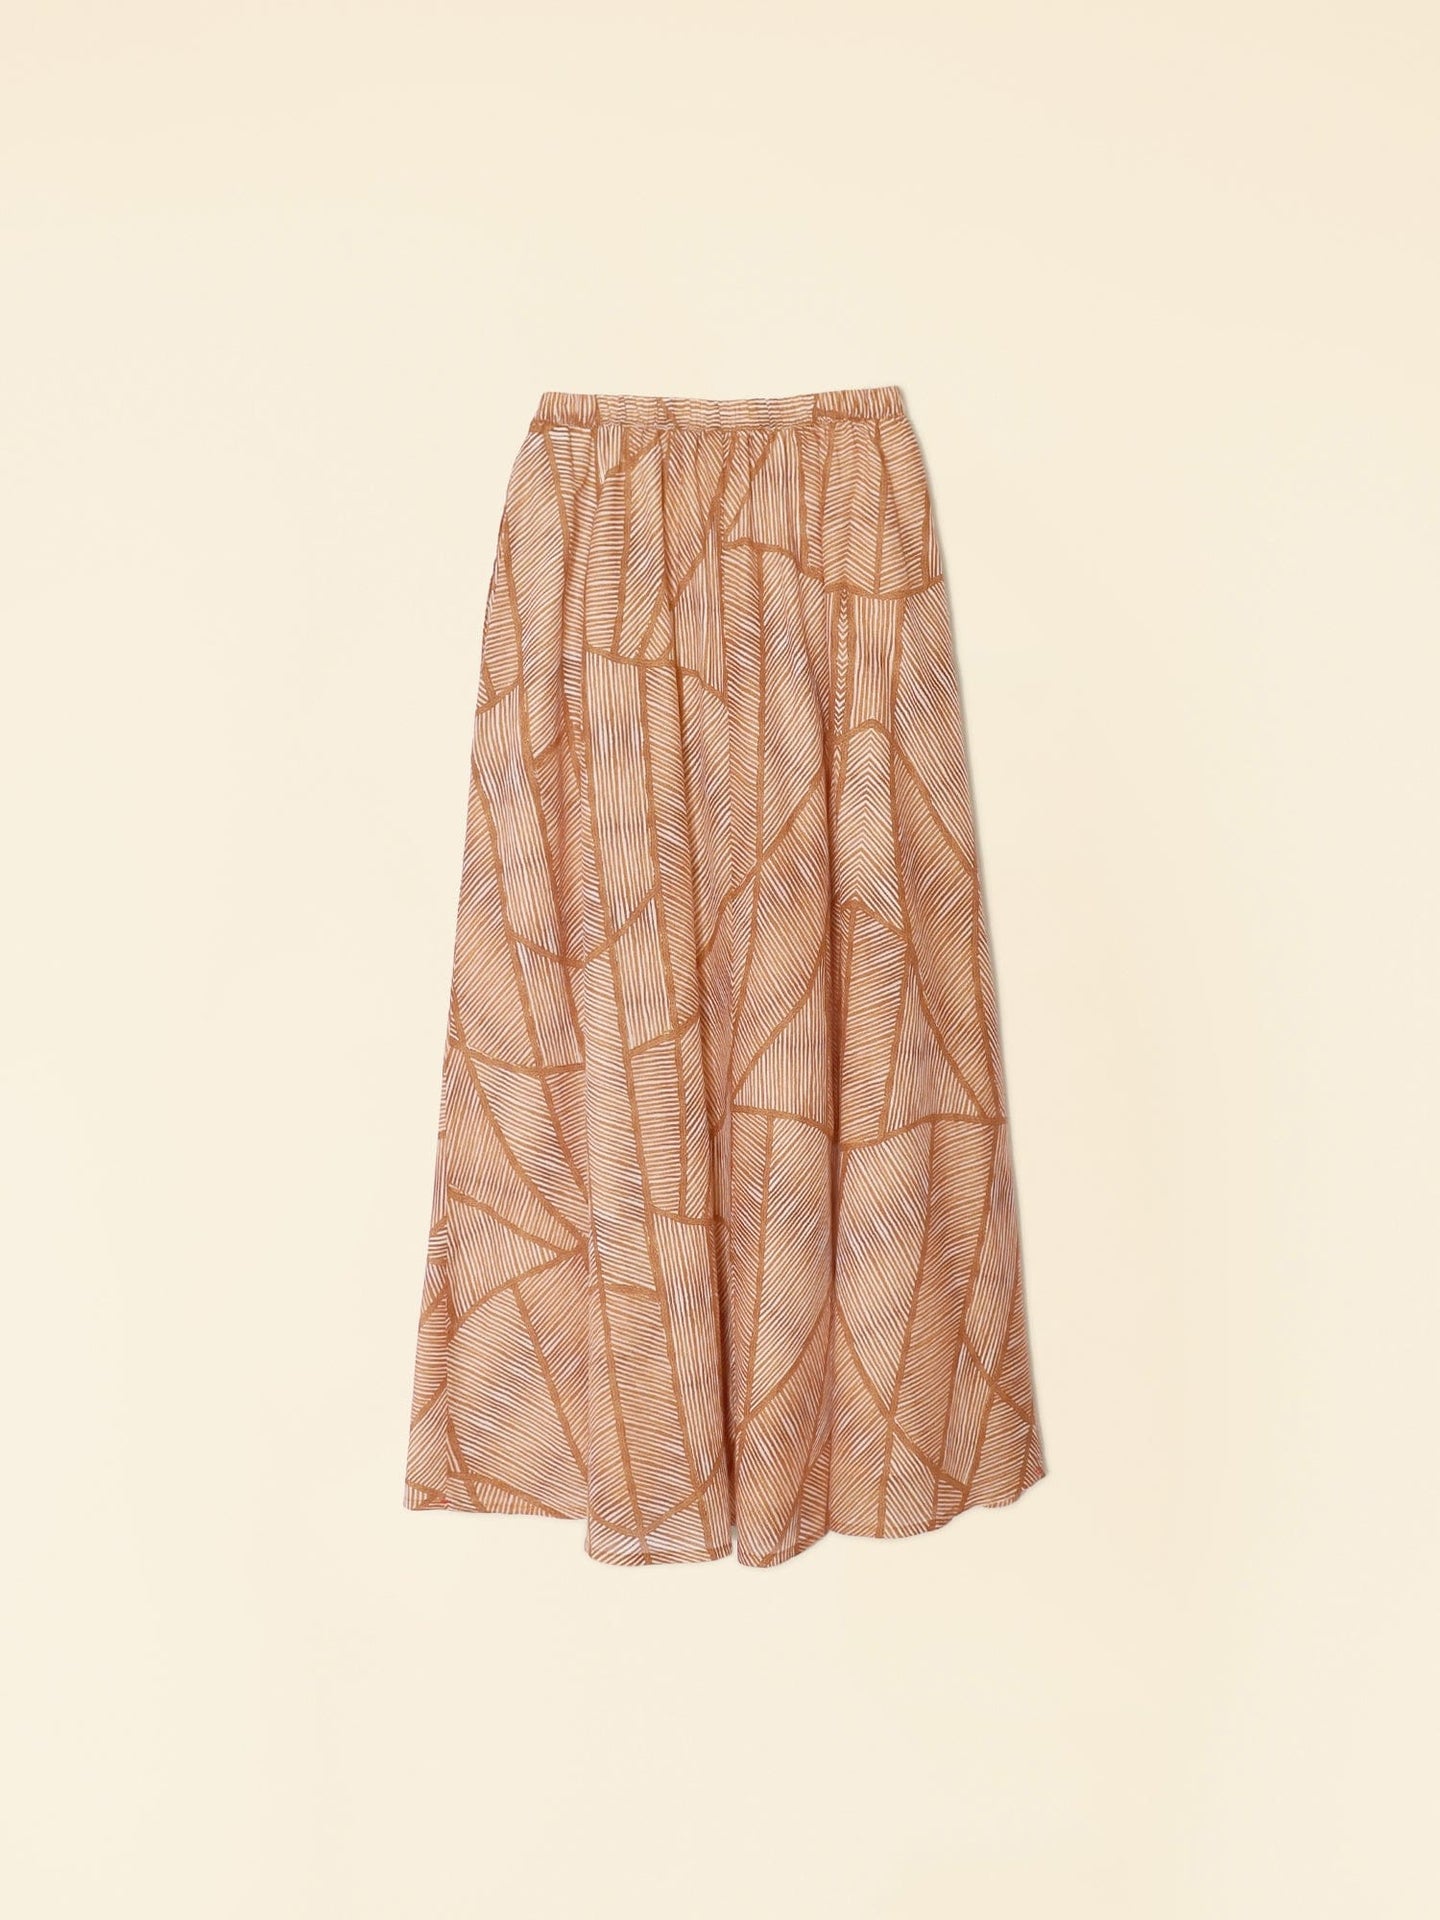 Xirena Skirt Gold Geode Gable Skirt